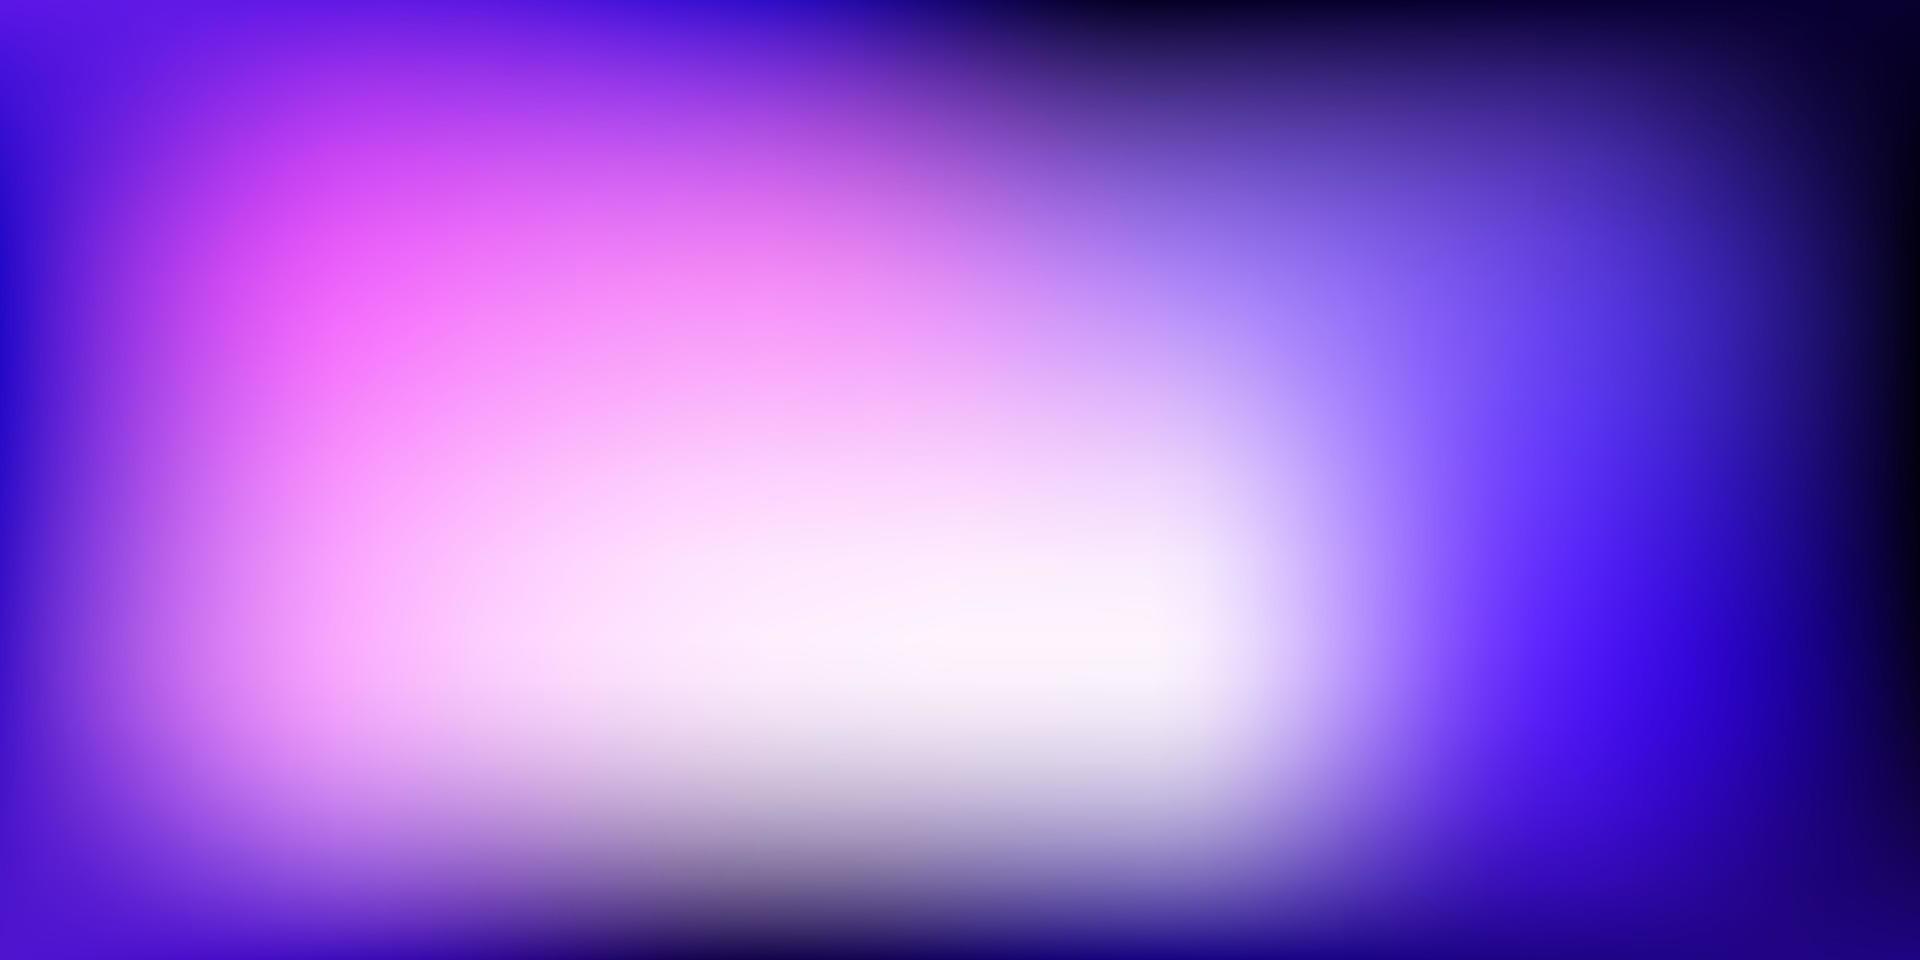 ljuslila, rosa vektor abstrakt oskärpa bakgrund.